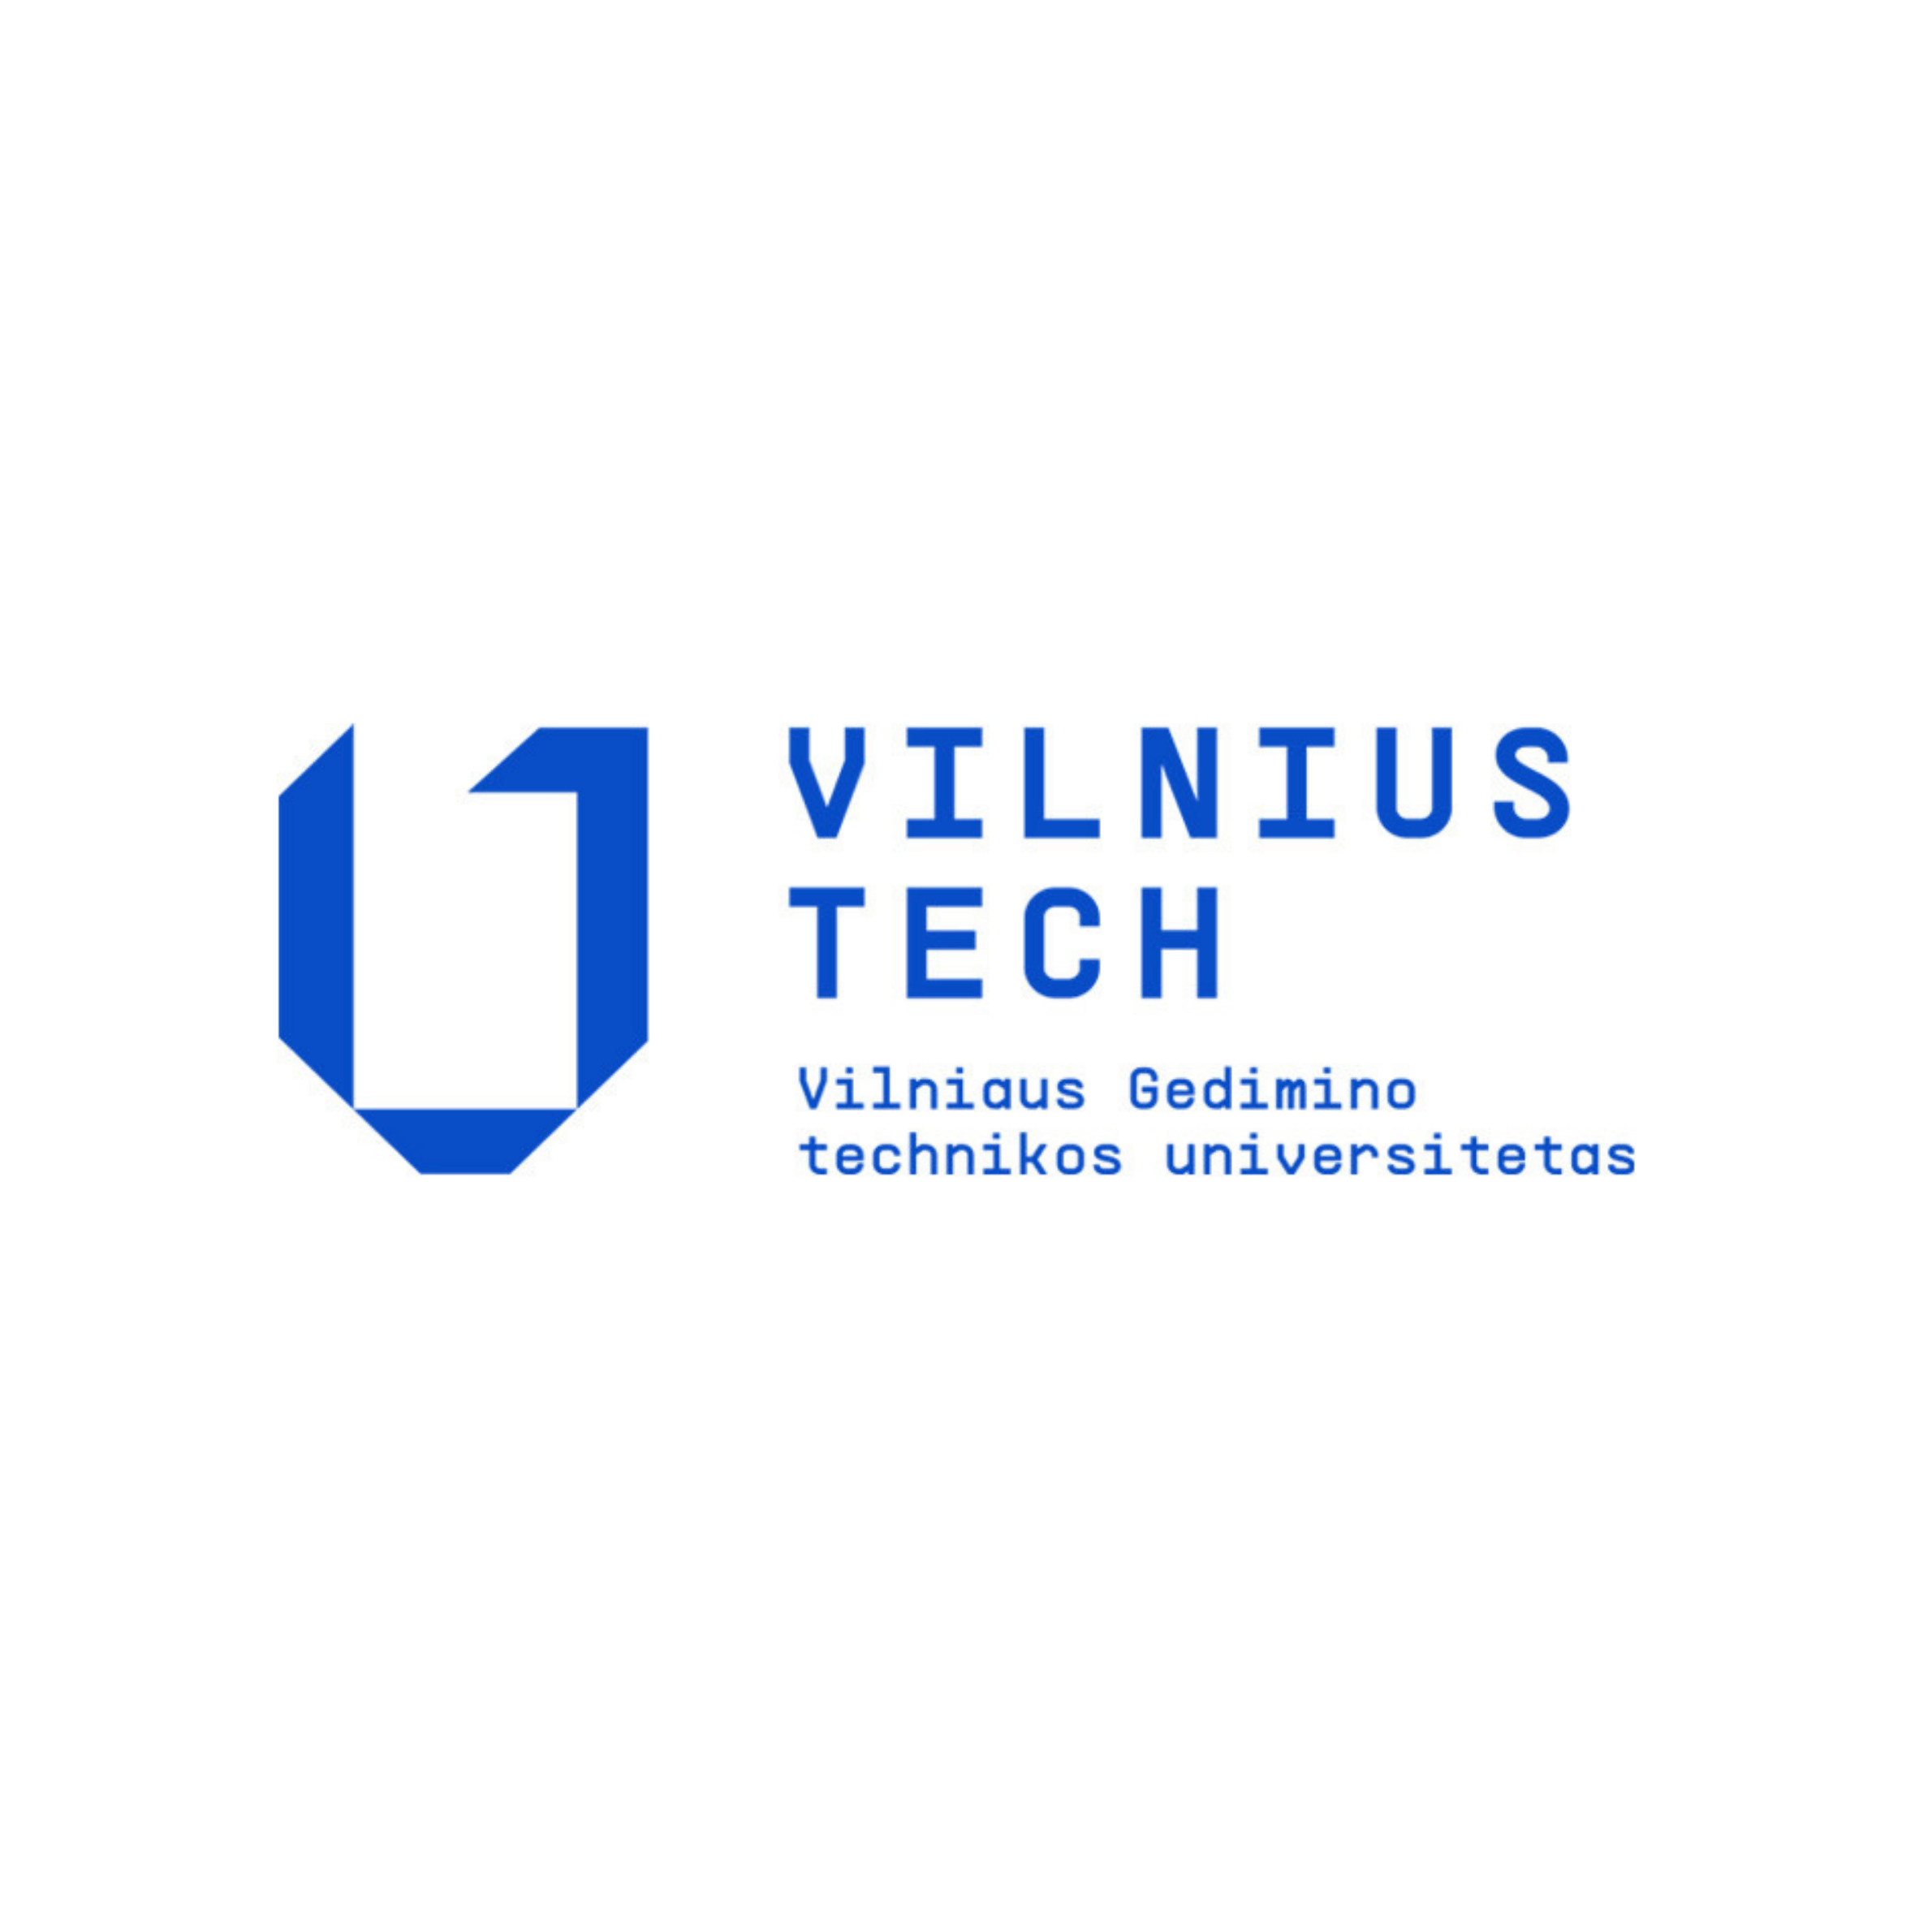 Vilniaus Gedimino technikos universitetas (VILNIUS TECH)